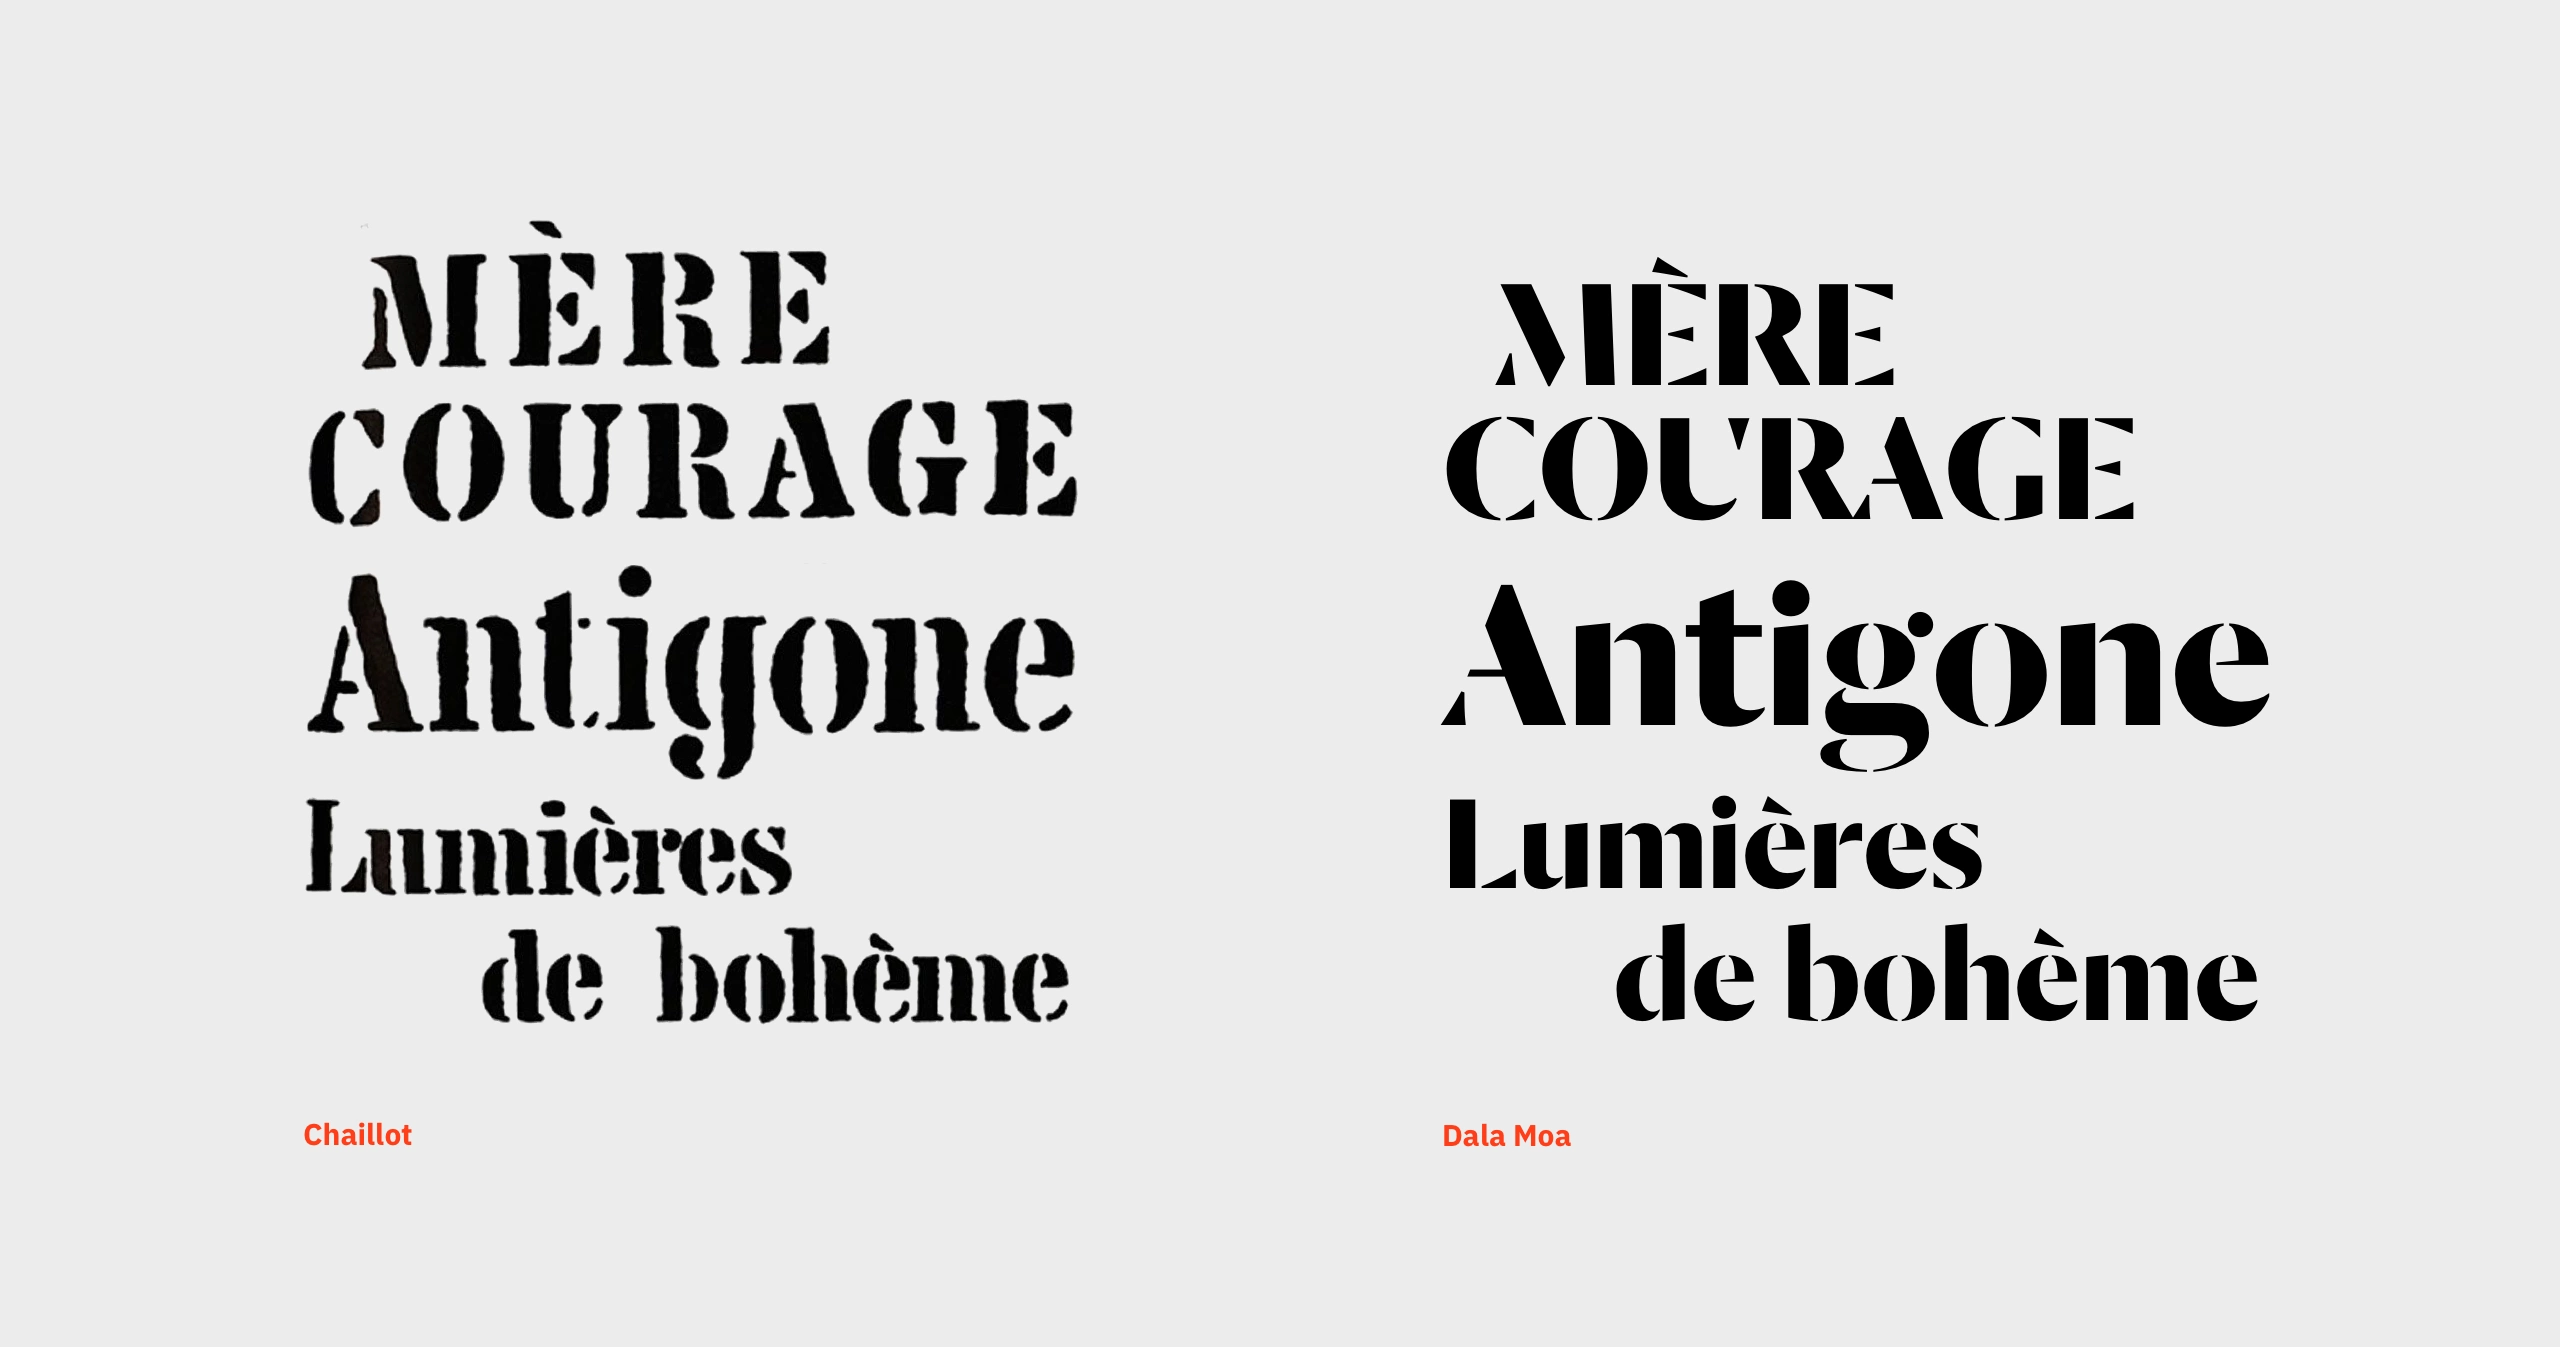 Aperçu de la typographie Jacno à gauche et à droite la nouvelle typograhie choisie